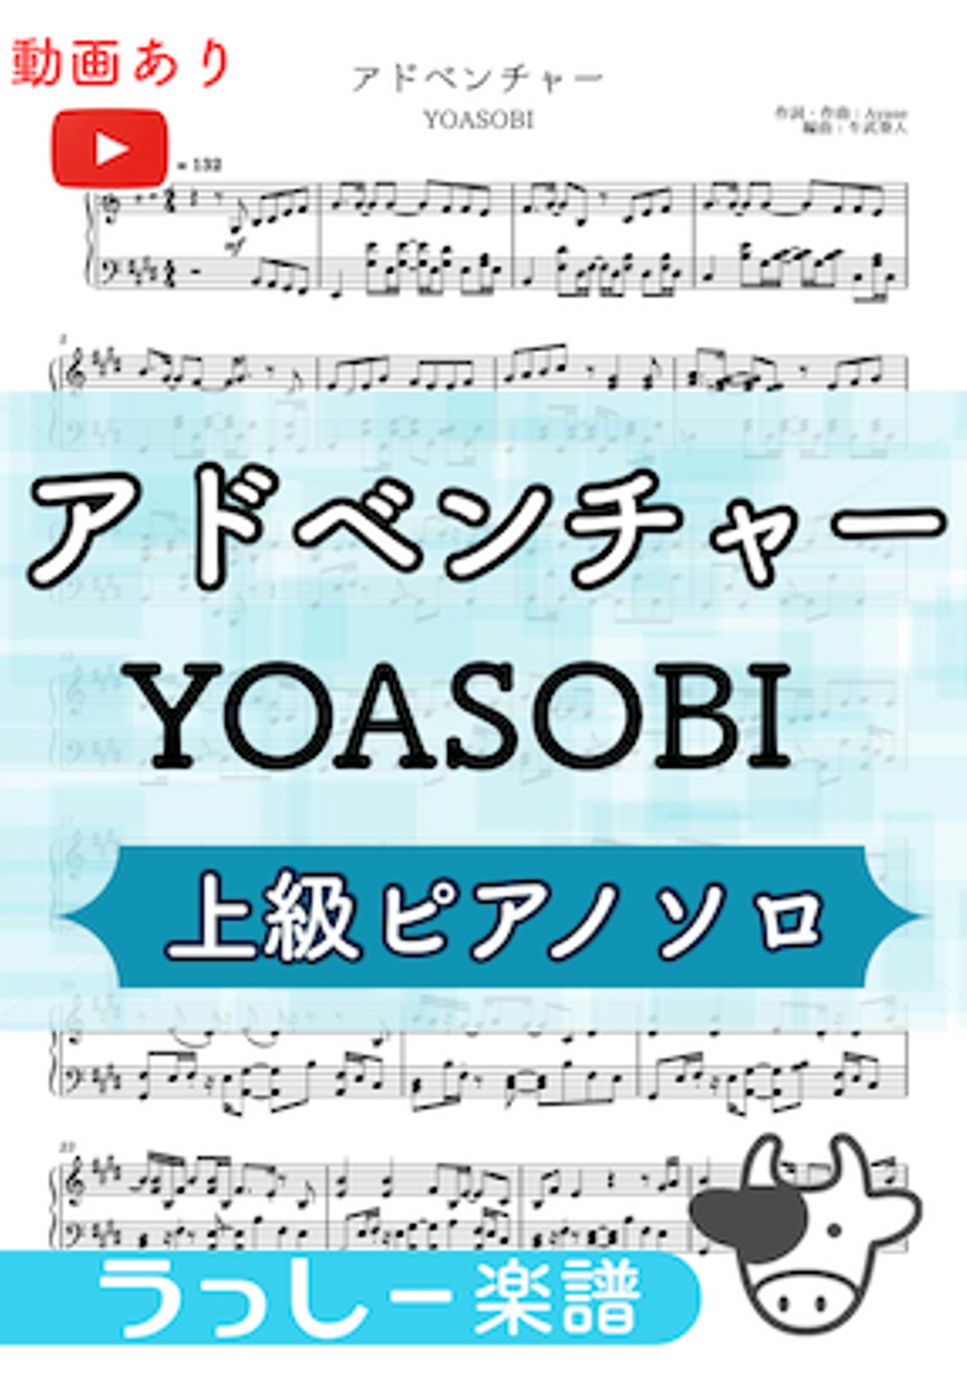 YOASOBI - アドベンチャー by 牛武奏人